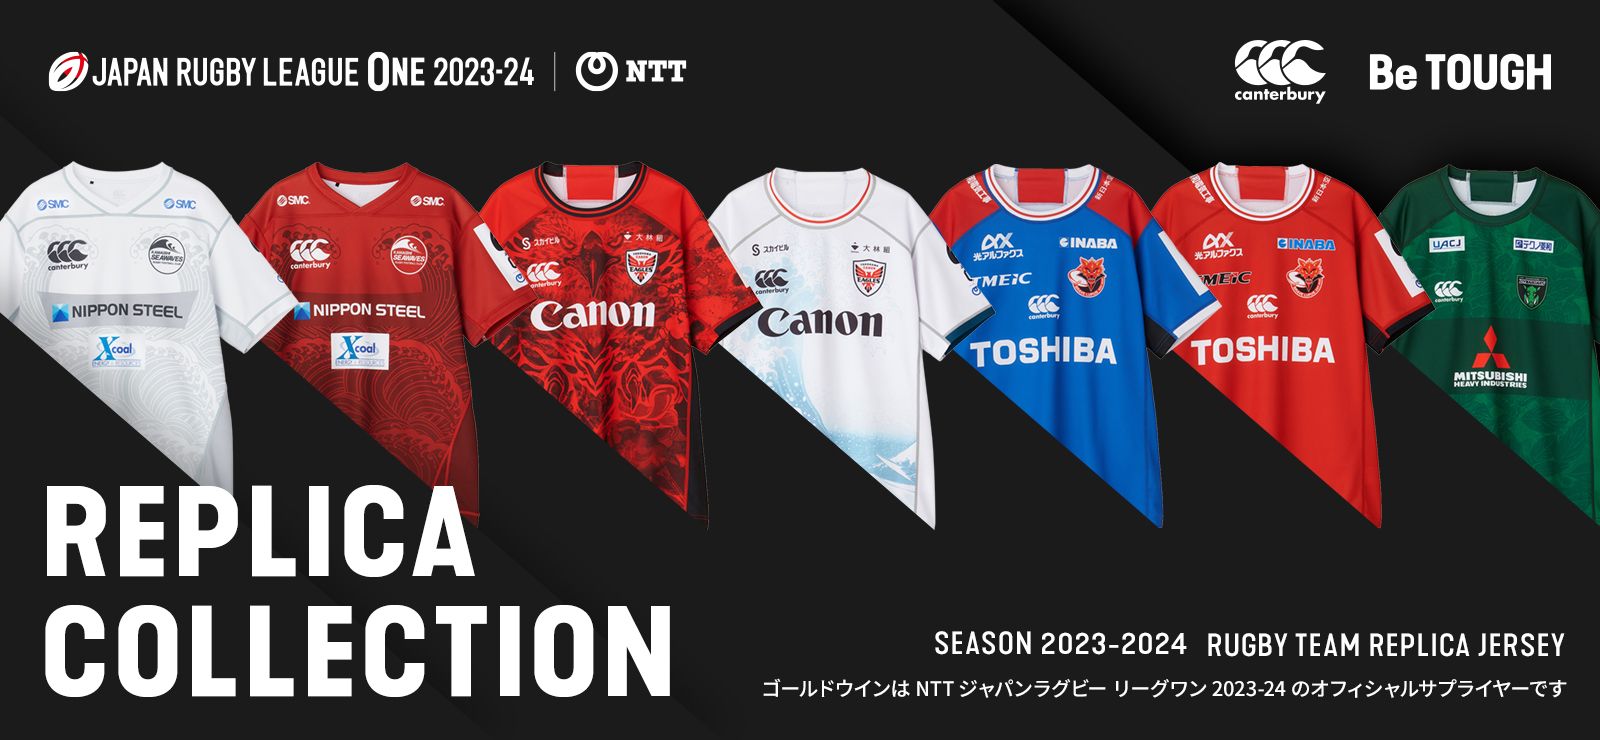 Rugby Online - 東京・日本橋 世界のラグビー用品が揃うラグビー 